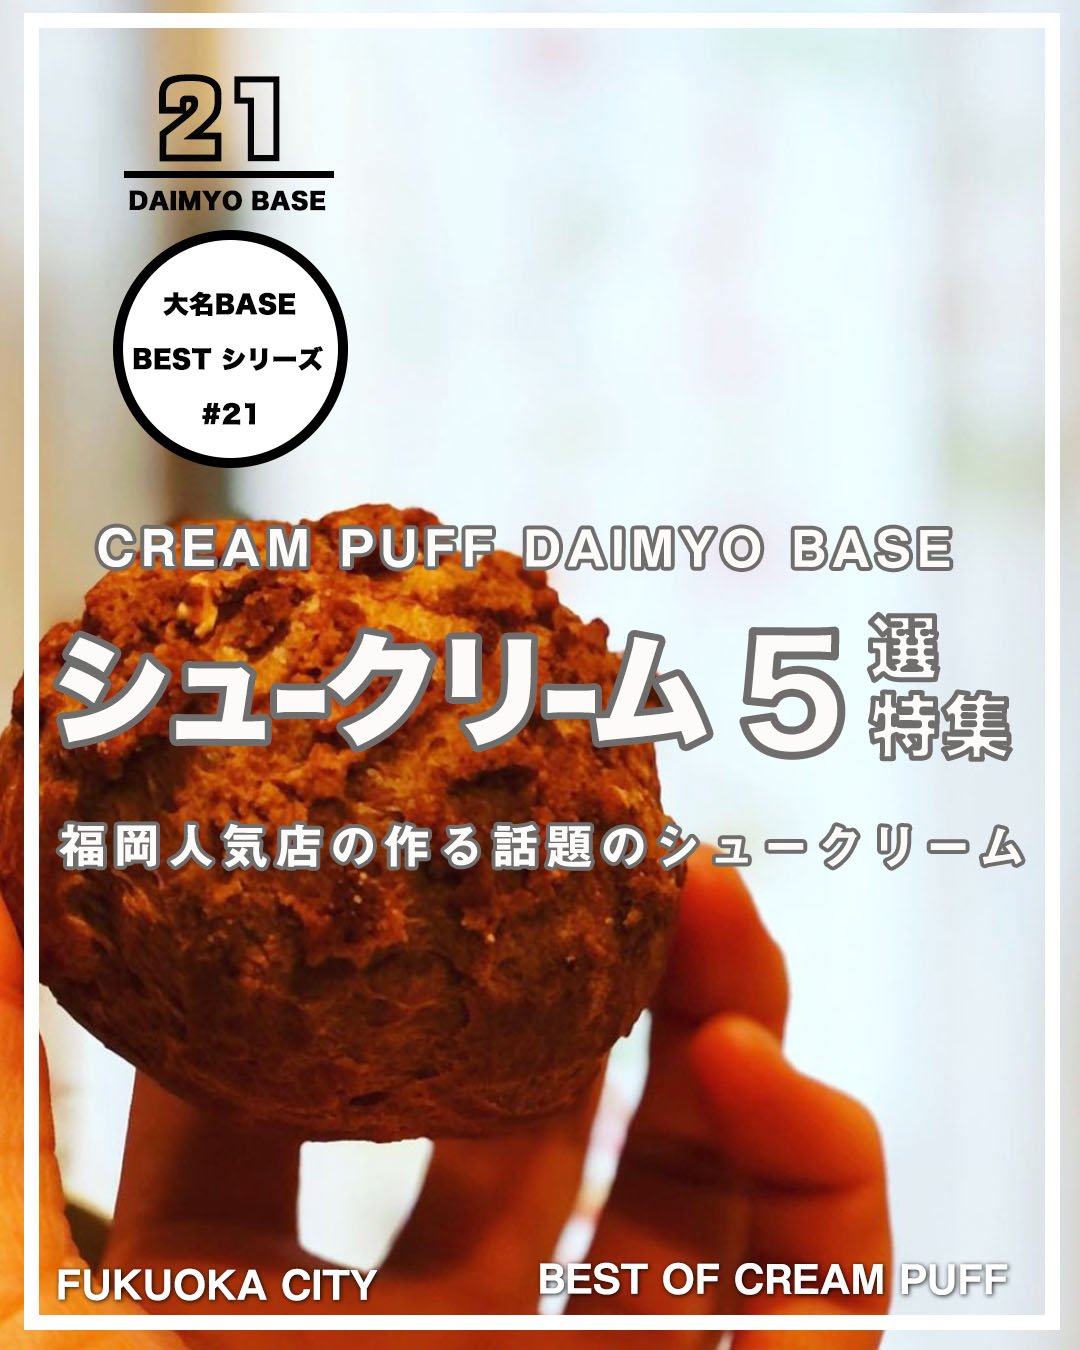 福岡人気店の作る話題の美味しいシュークリームおすすめ5選 大名base Daimyo Base